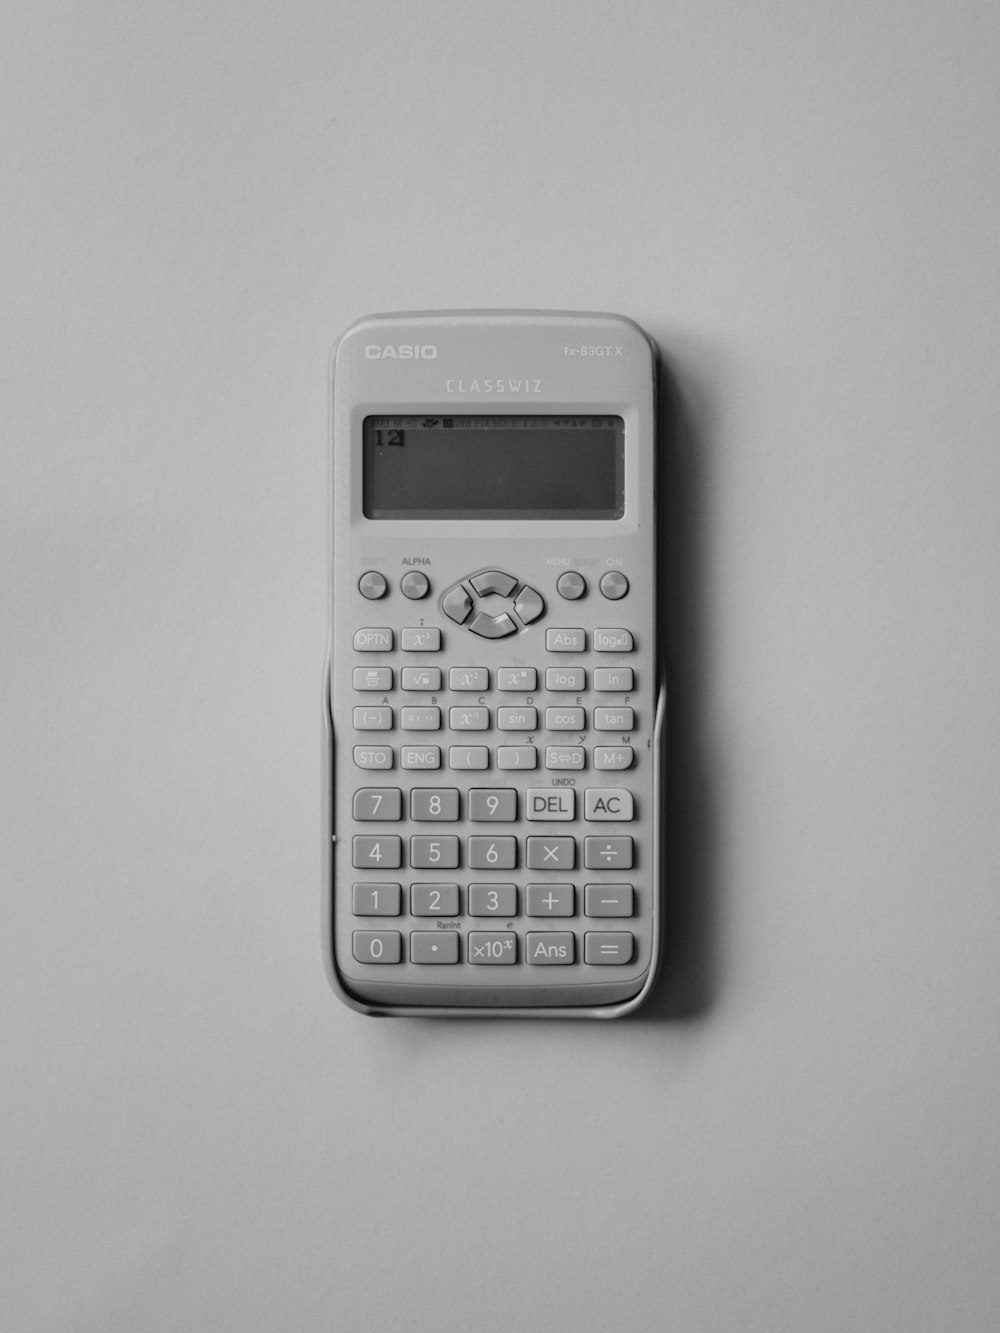 Foto Calculadora casio blanca – Imagen Calculadora gratis en Unsplash